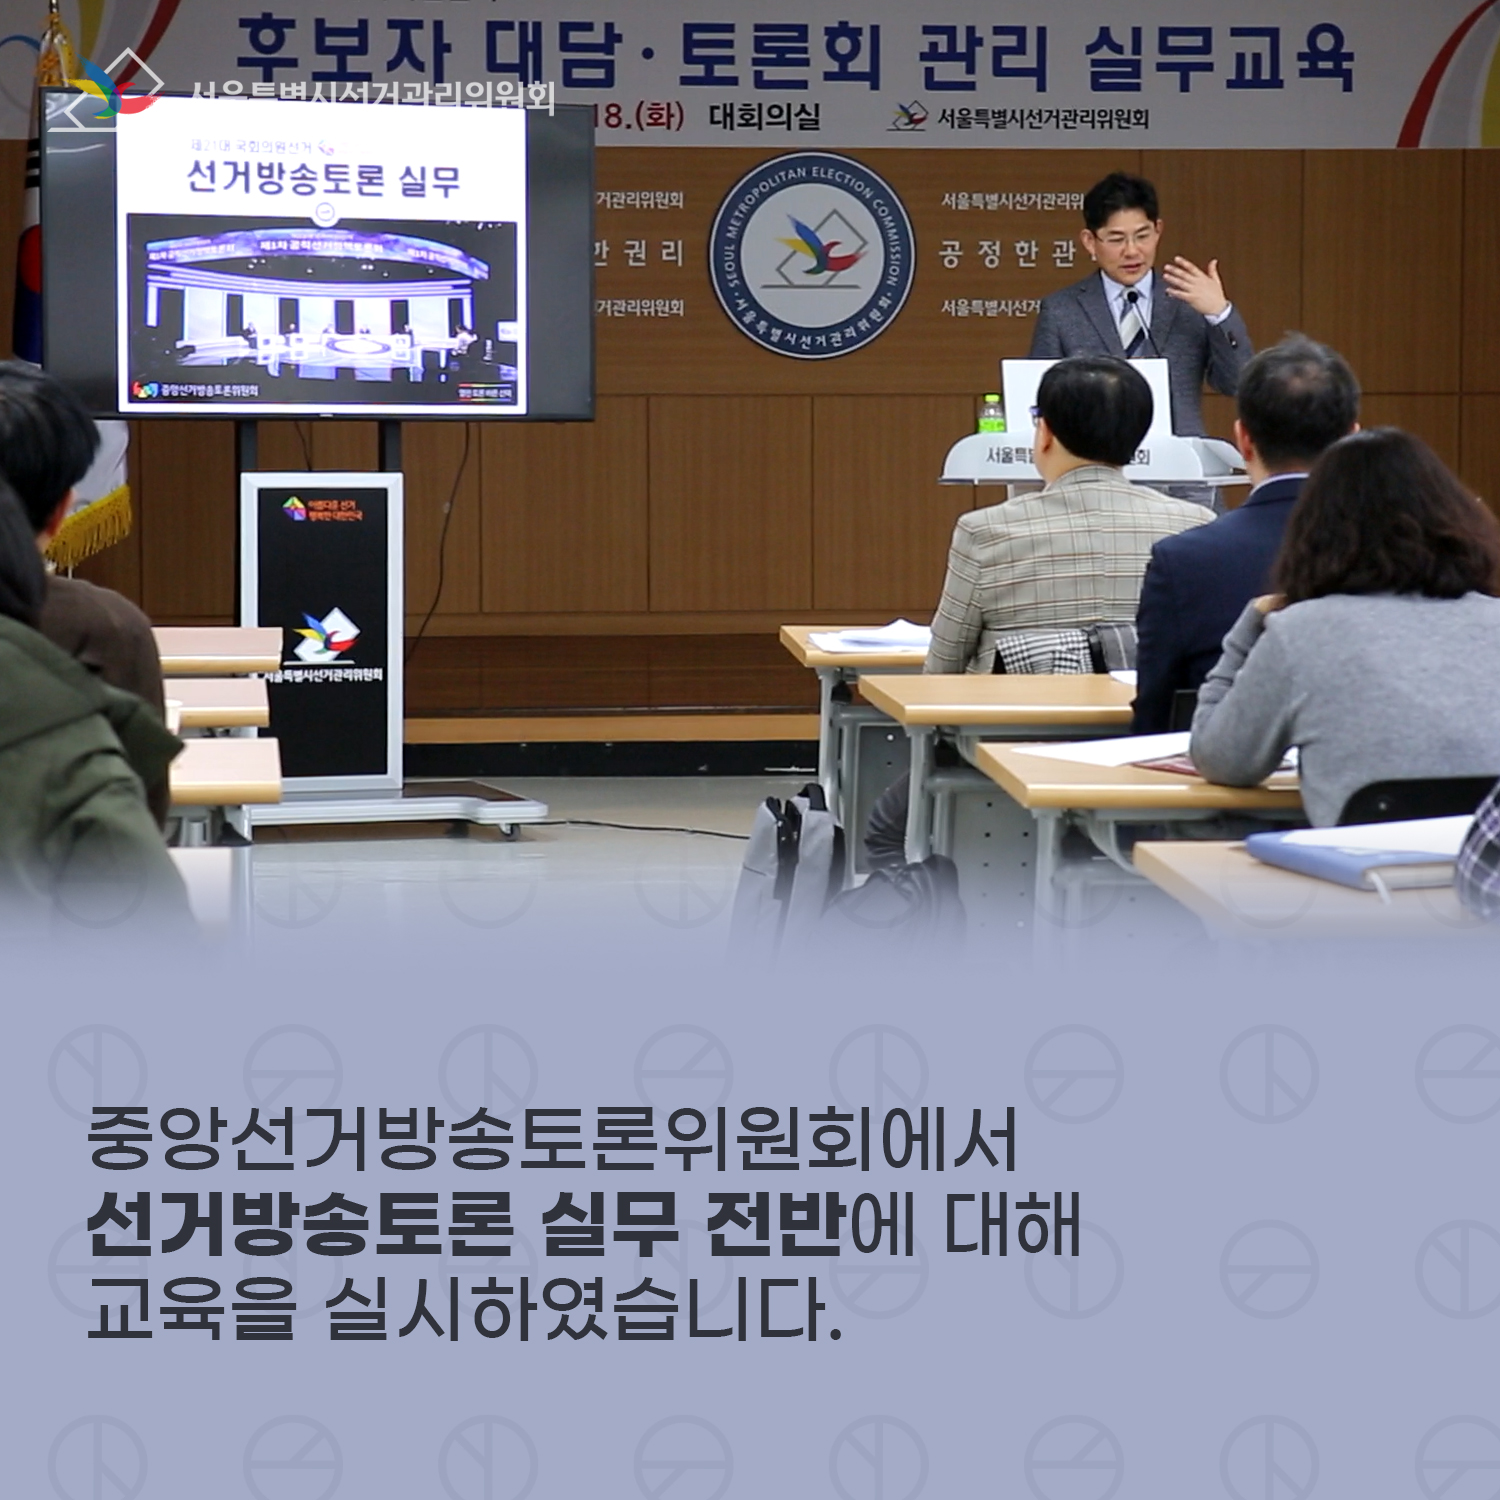 교육 진행 모습, 중앙선거방송토론위원회에서 선거방송토론 실무 전반에 대해 교육을 실시하였습니다.